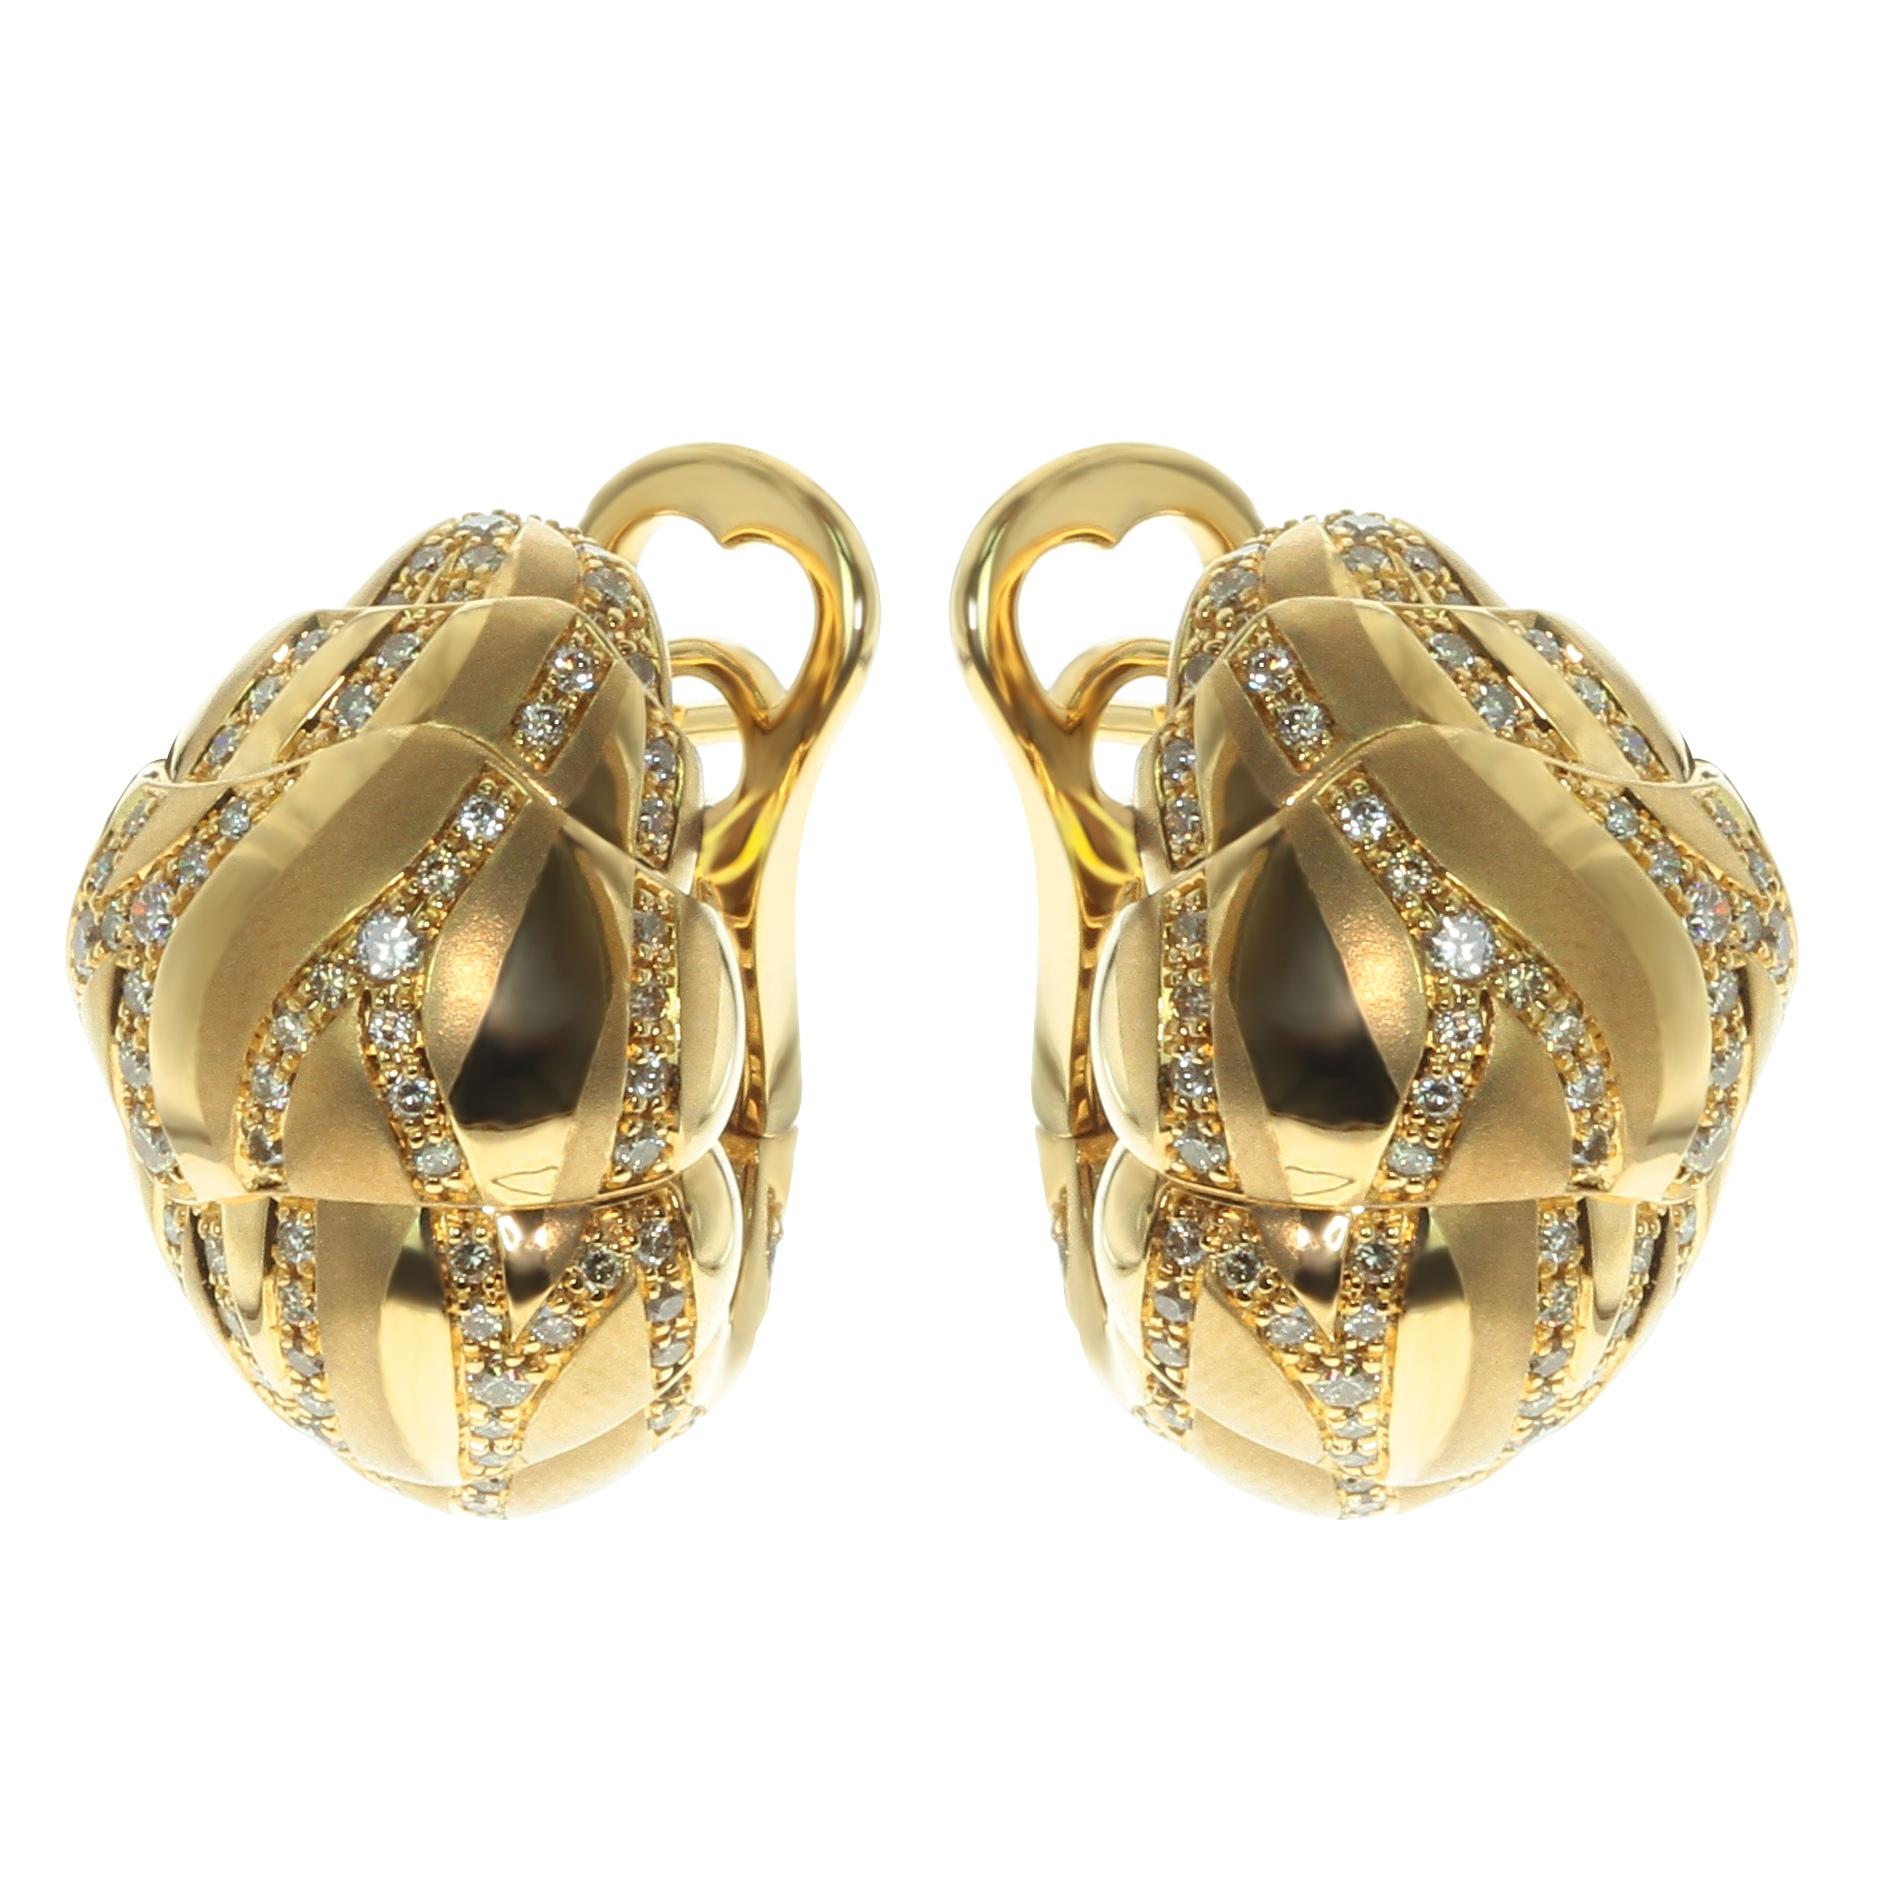 Braune Diamanten 18 Karat Gelbgold Sand-Düne Ohrringe

Waren Sie jemals in einer Sandwüste? Lassen Sie uns die Ohrringe darstellen, die durch eine gemütliche Wüste inspiriert werden. Die Ohrringformen und die Kombination von poliertem und feinem,